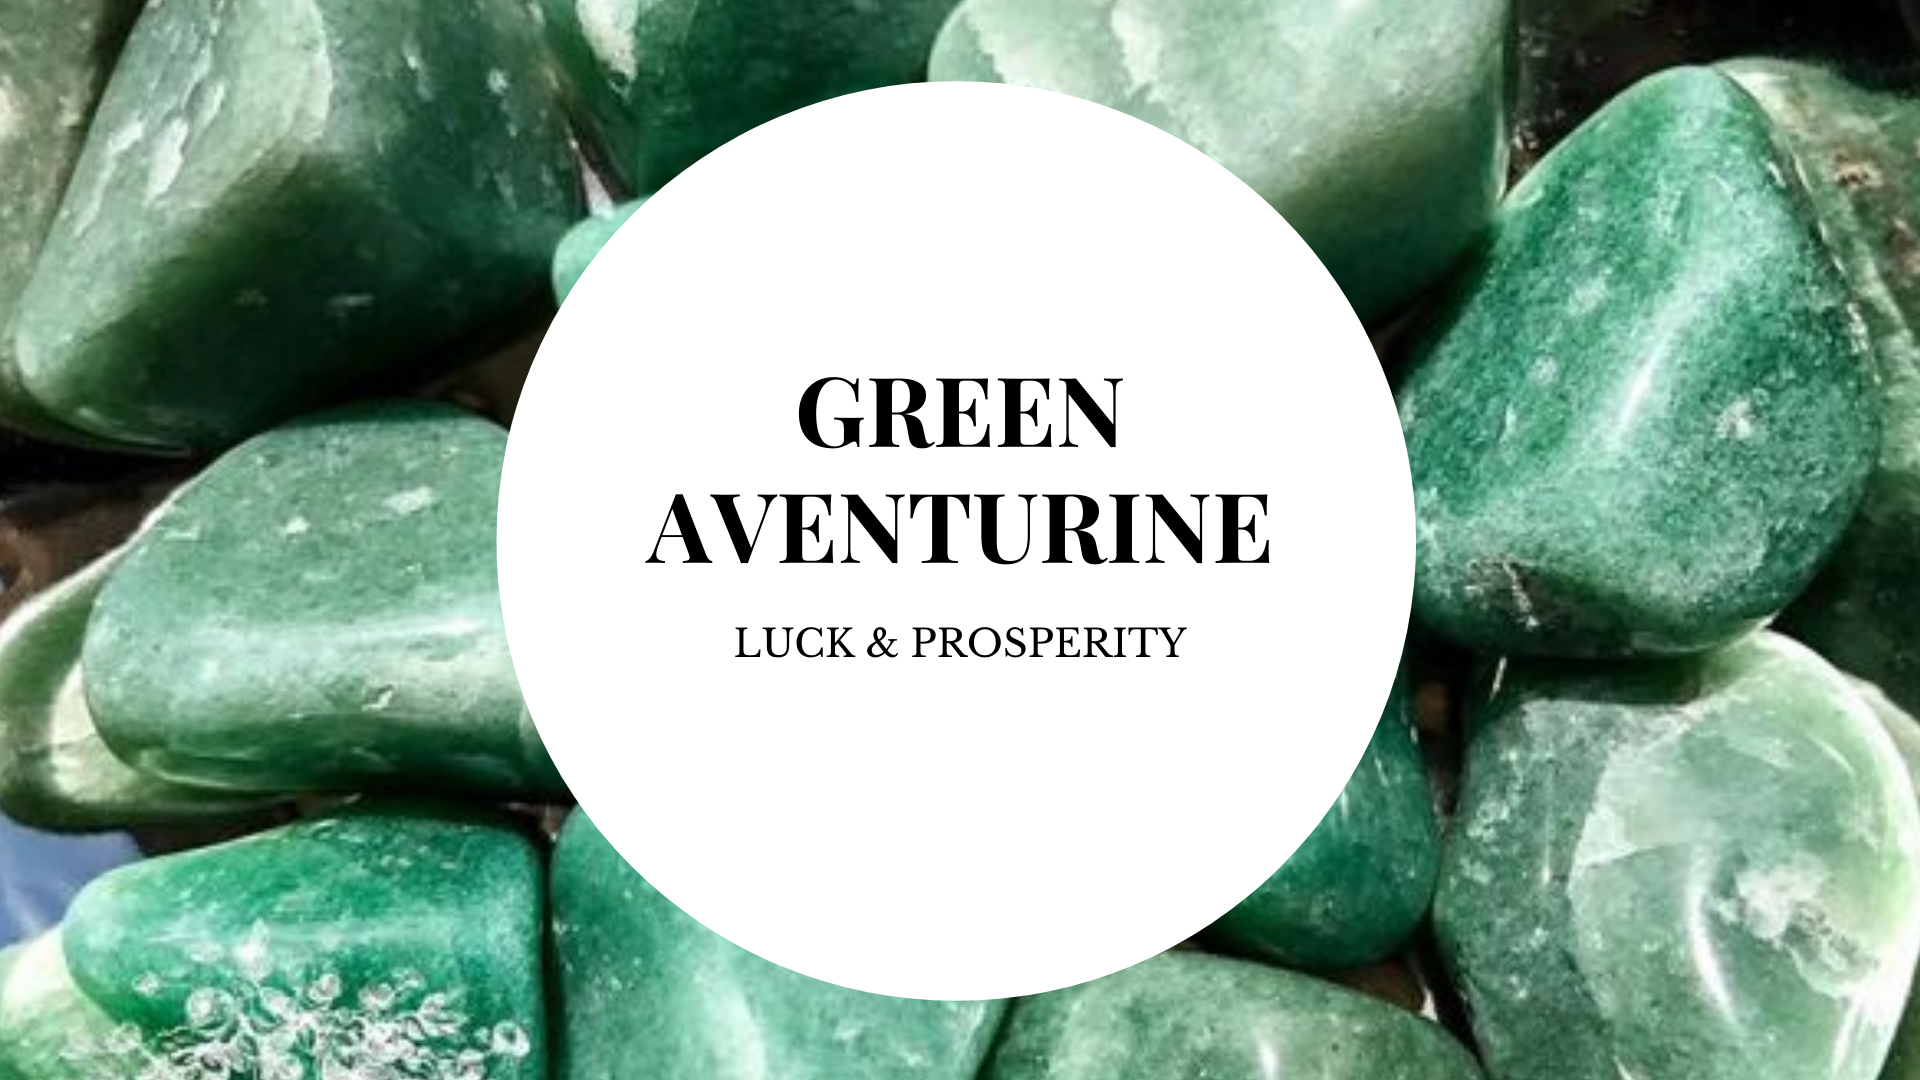 Green Aventurine Healing Properties | Green Aventurine Meaning | Benefits Of Green Aventurine - Magic Crystals